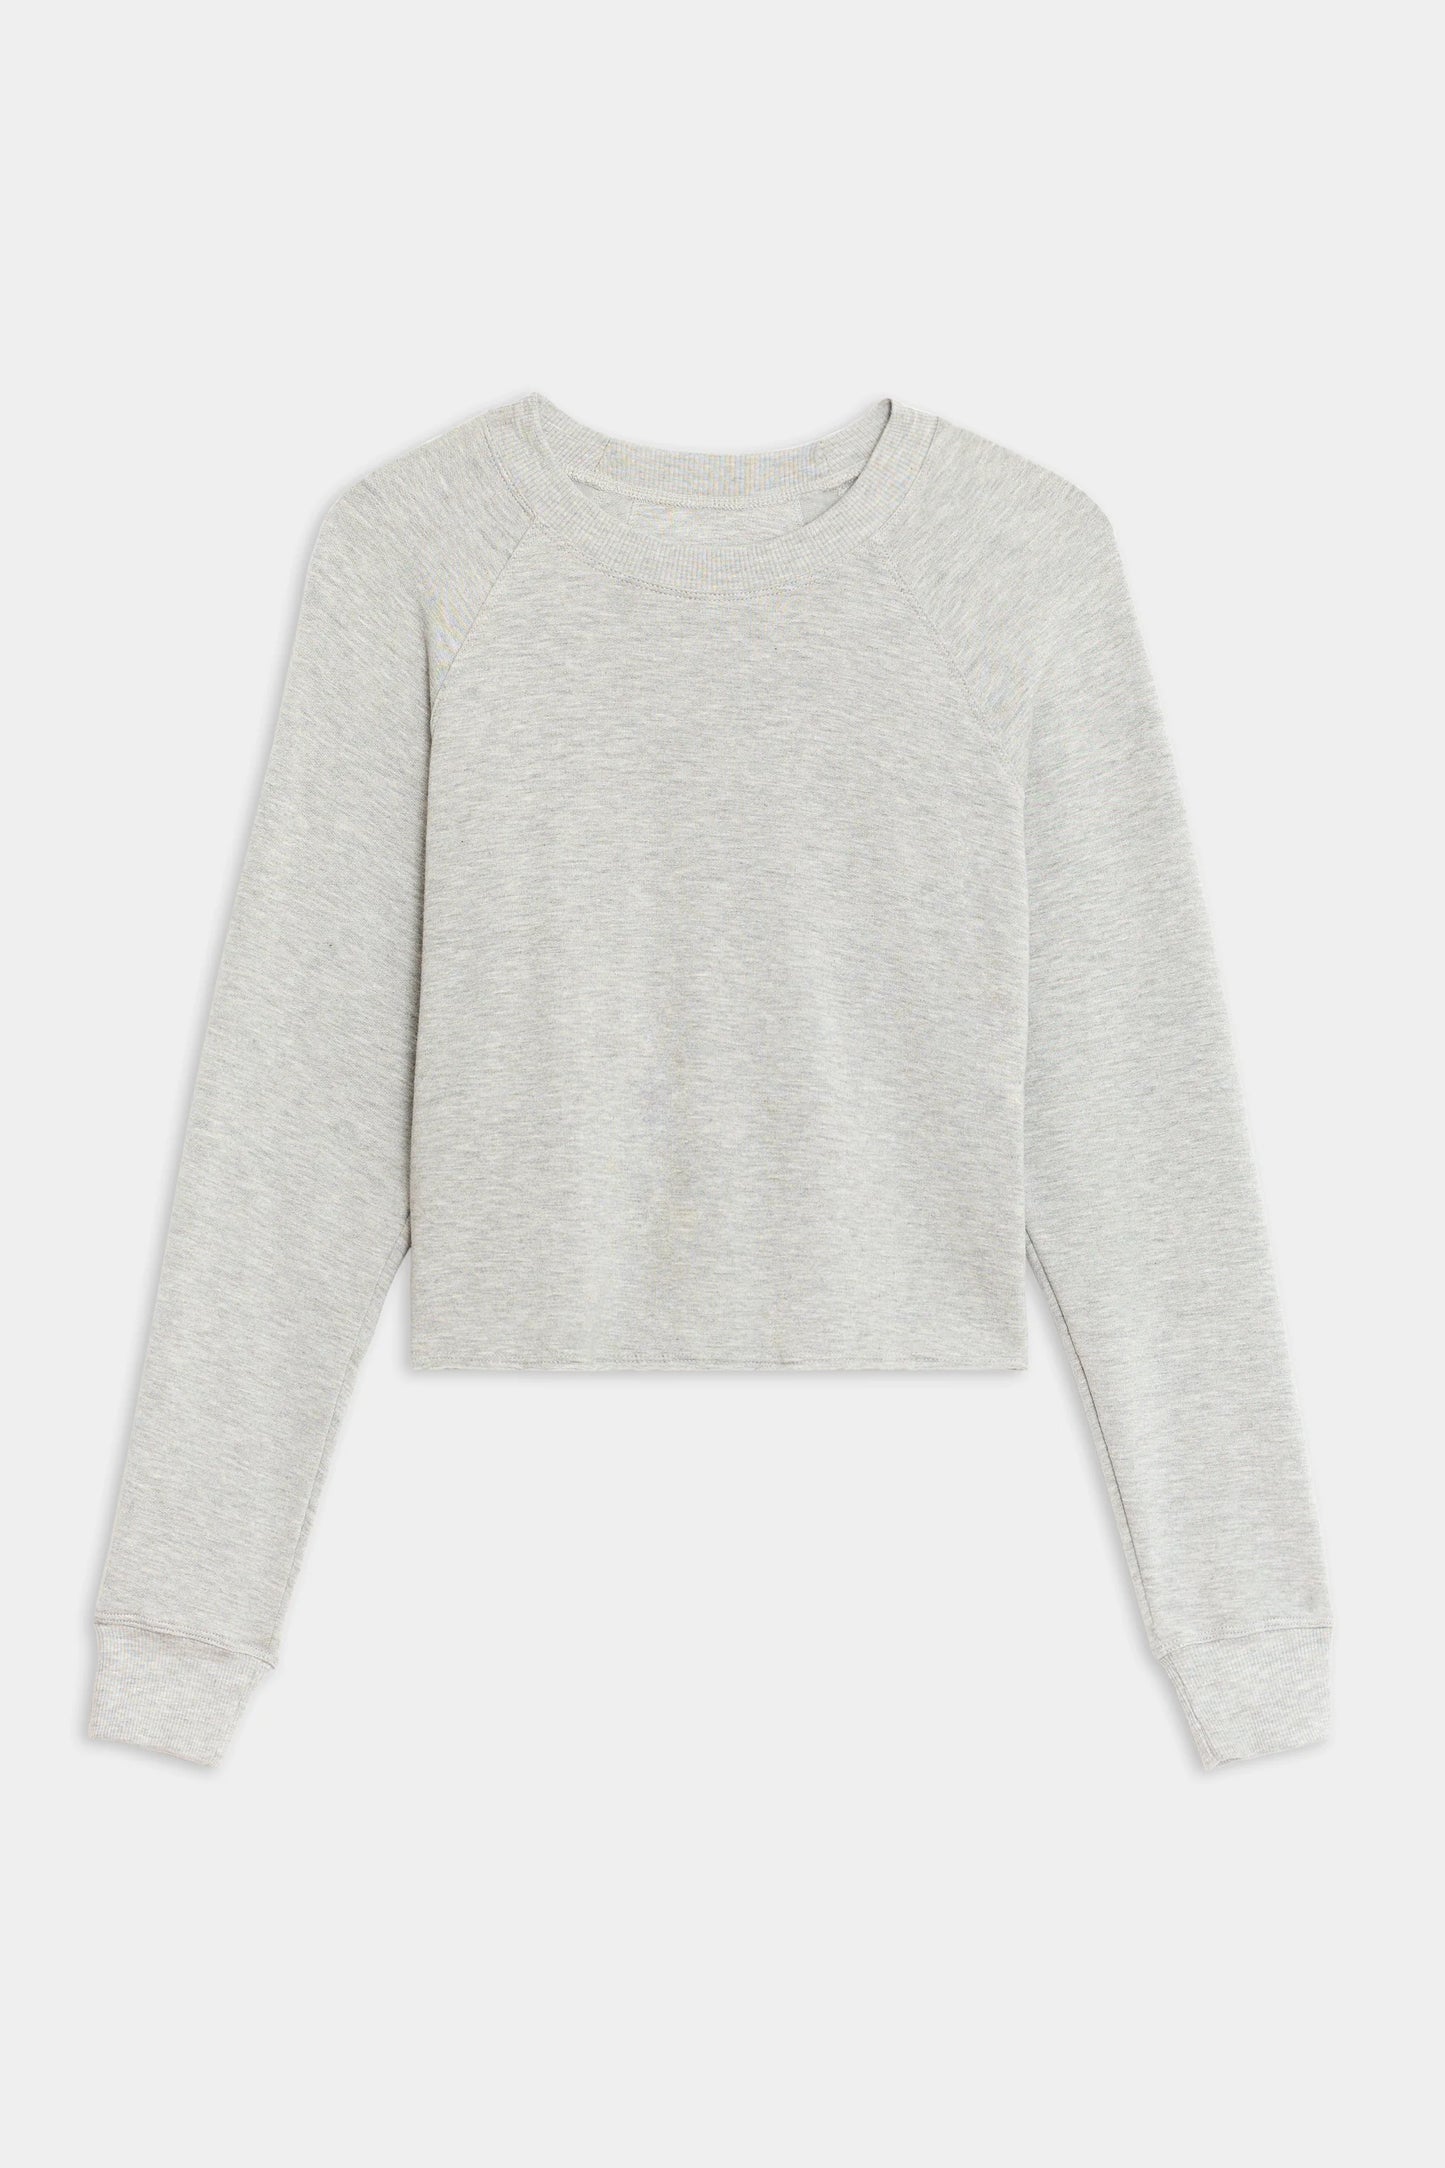 Splits59 Warm Up Crop Fleece Sweatshirt